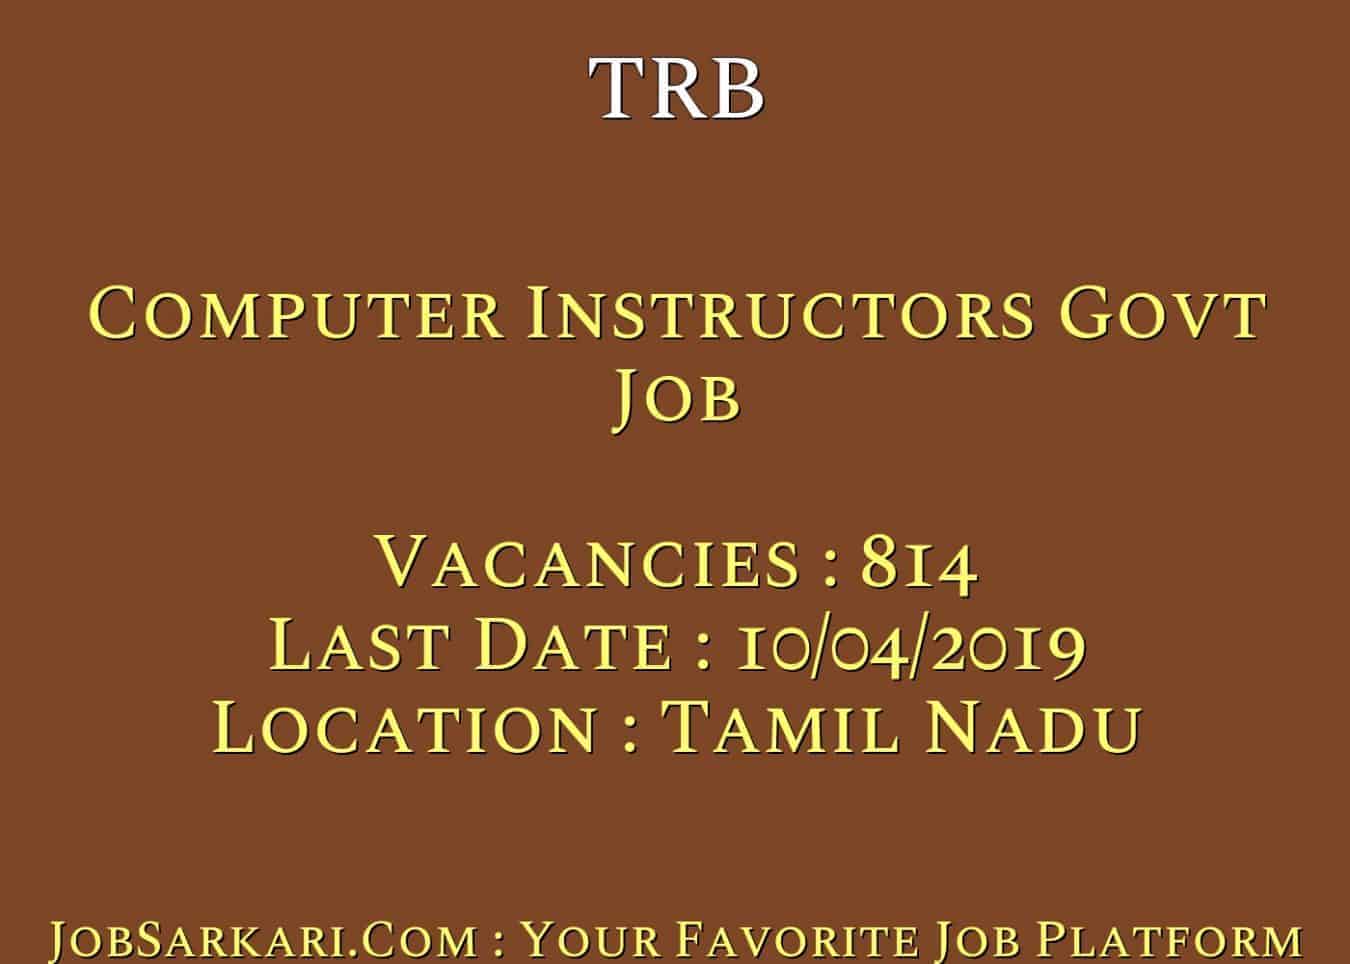 TRB Recruitment 2019 For Computer Instructors Govt Job